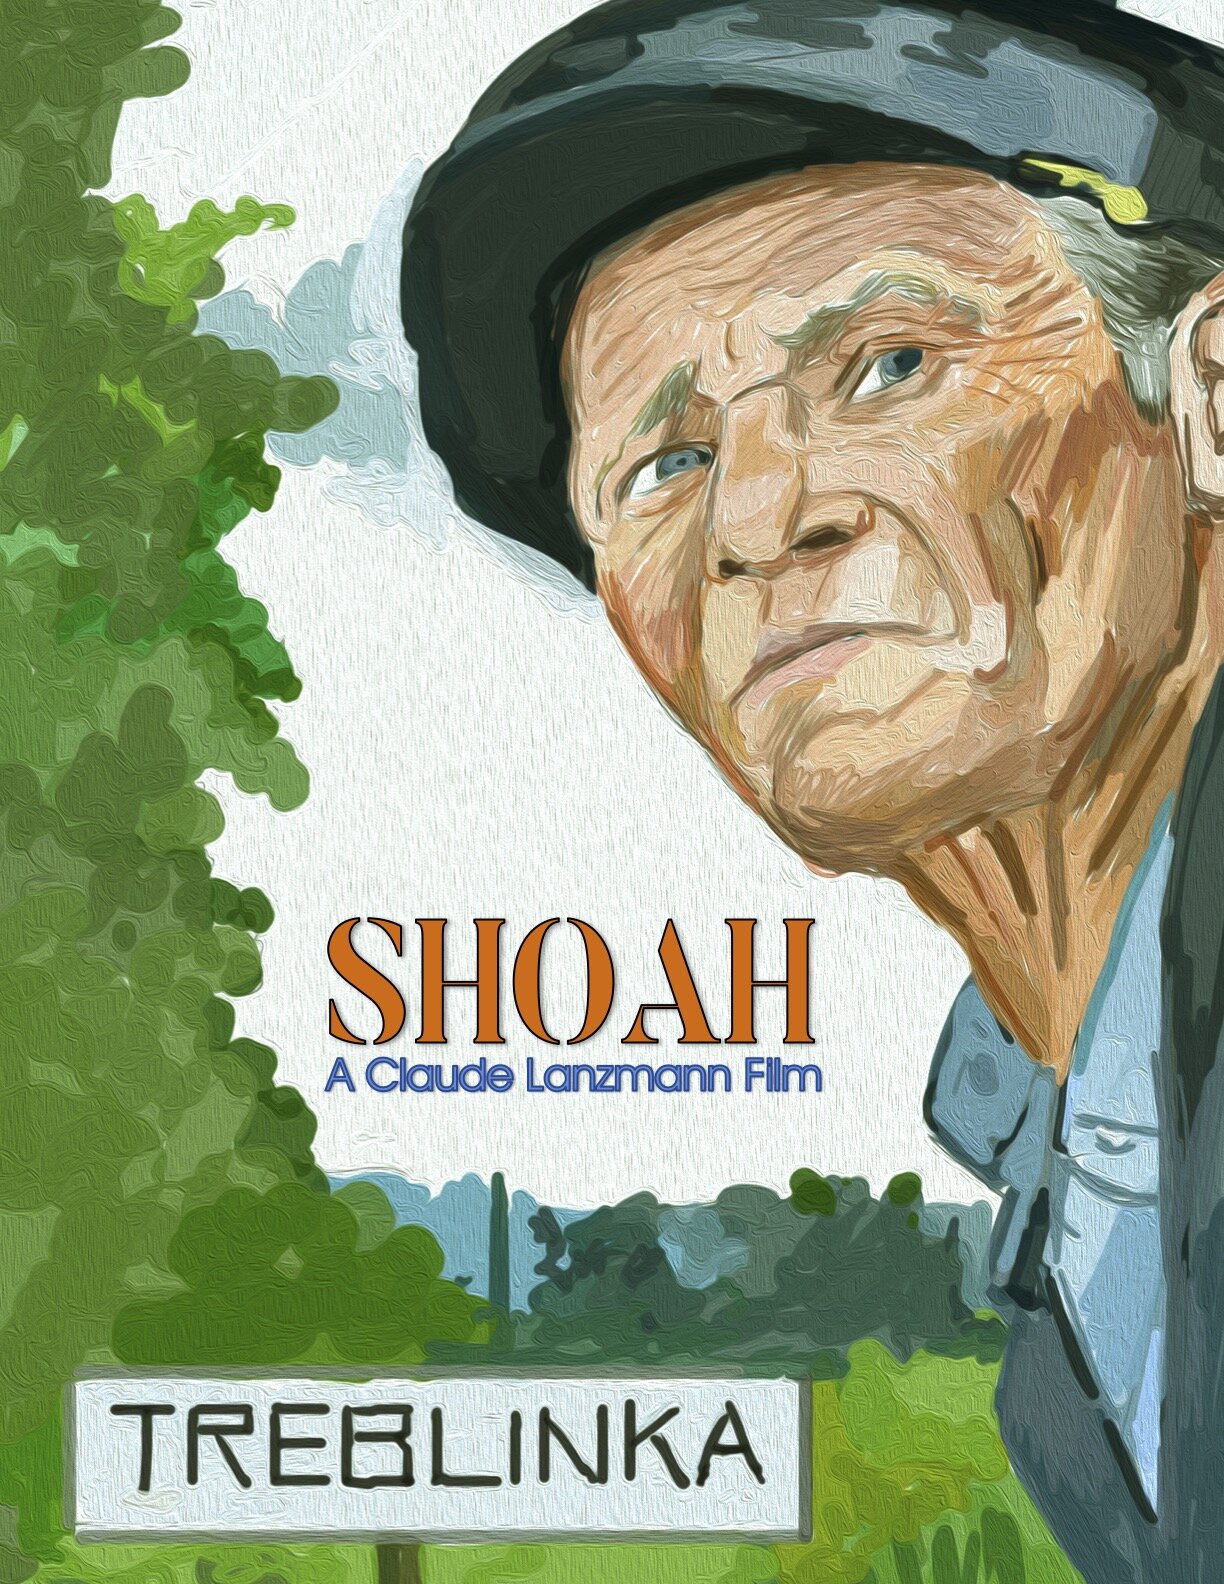 Shoah (1985)